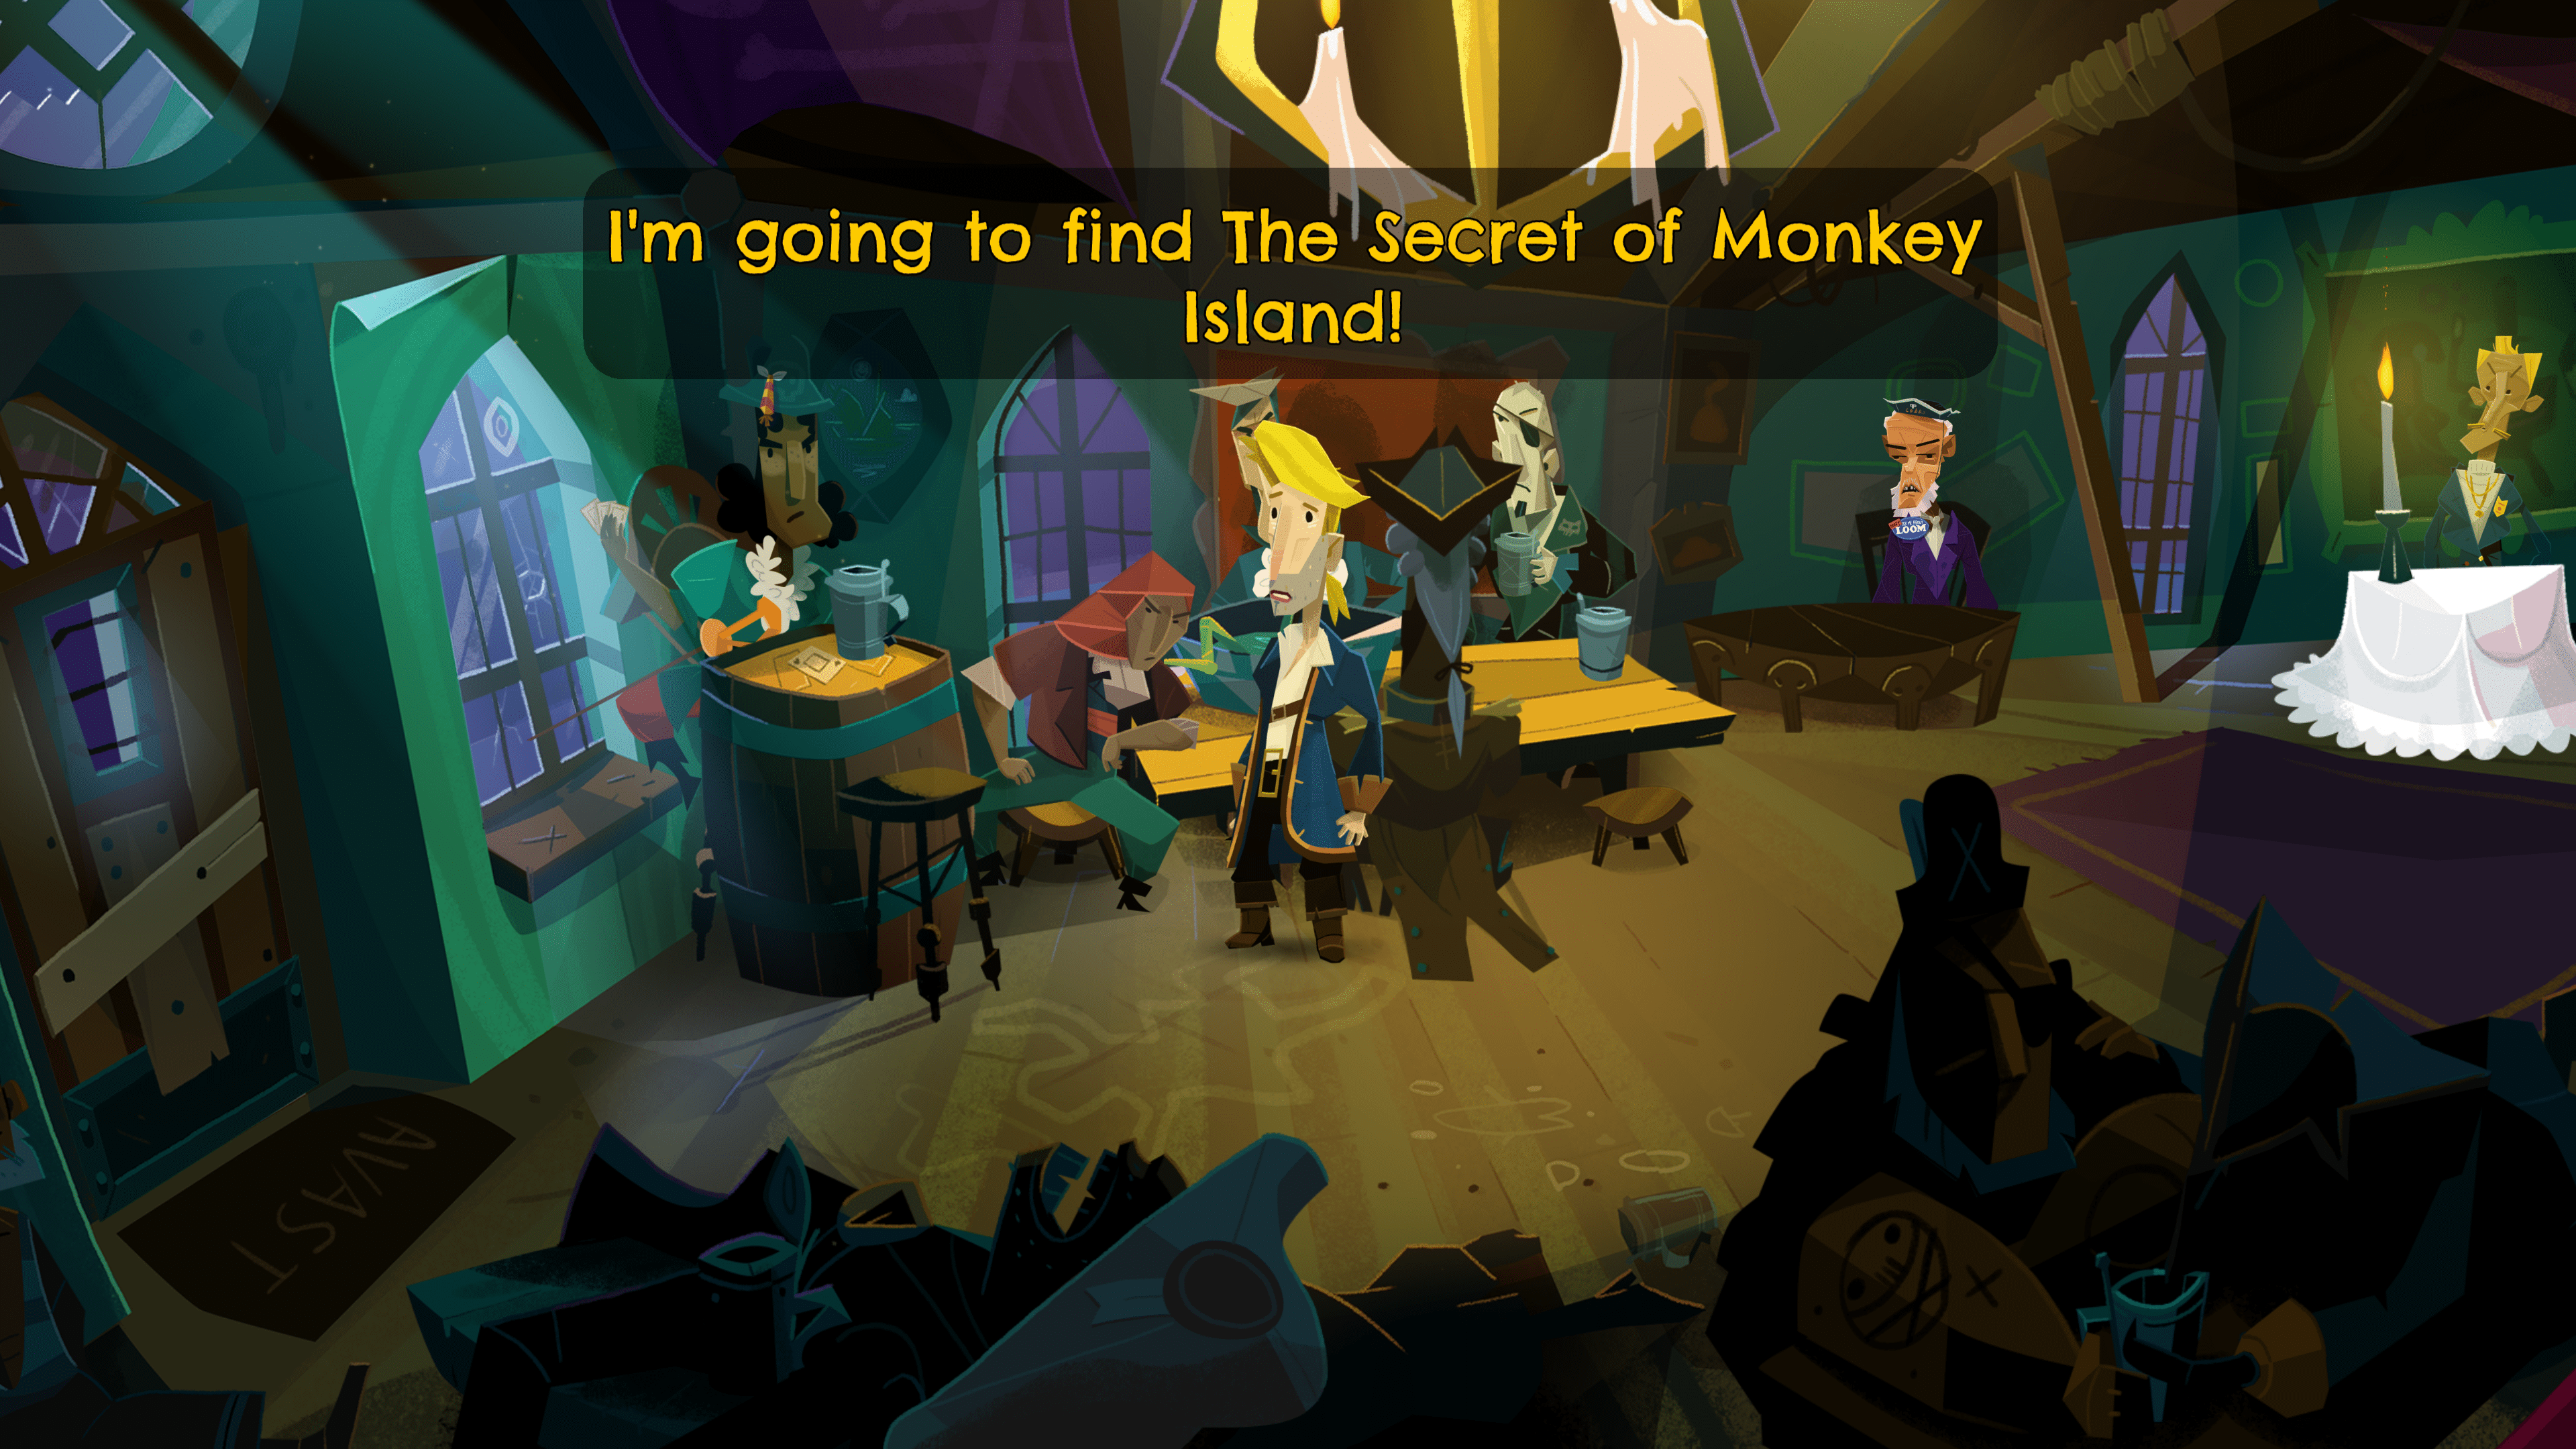 Bien que le premier jeu en faisait mention dans son titre, ce n'est que 30 ans plus tard que le secret de l'île aux singes est au centre de l'intrigue